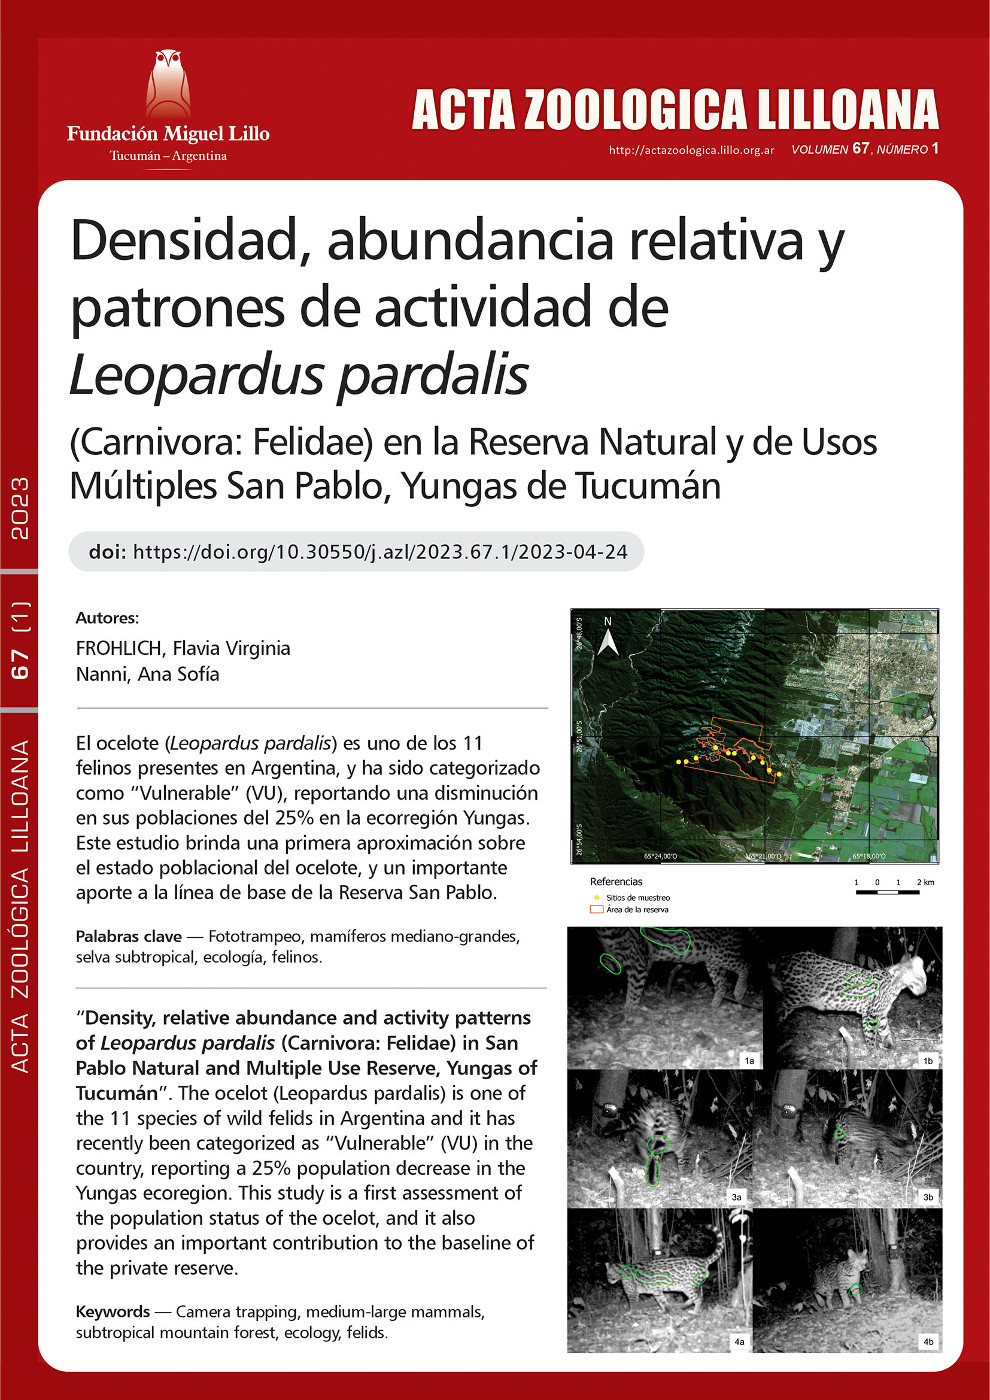 Densidad, abundancia relativa y patrones de actividad de Leopardus pardalis (Carnivora: Felidae) en la Reserva natural y de usos múltiples San Pablo, Yungas de Tucumán